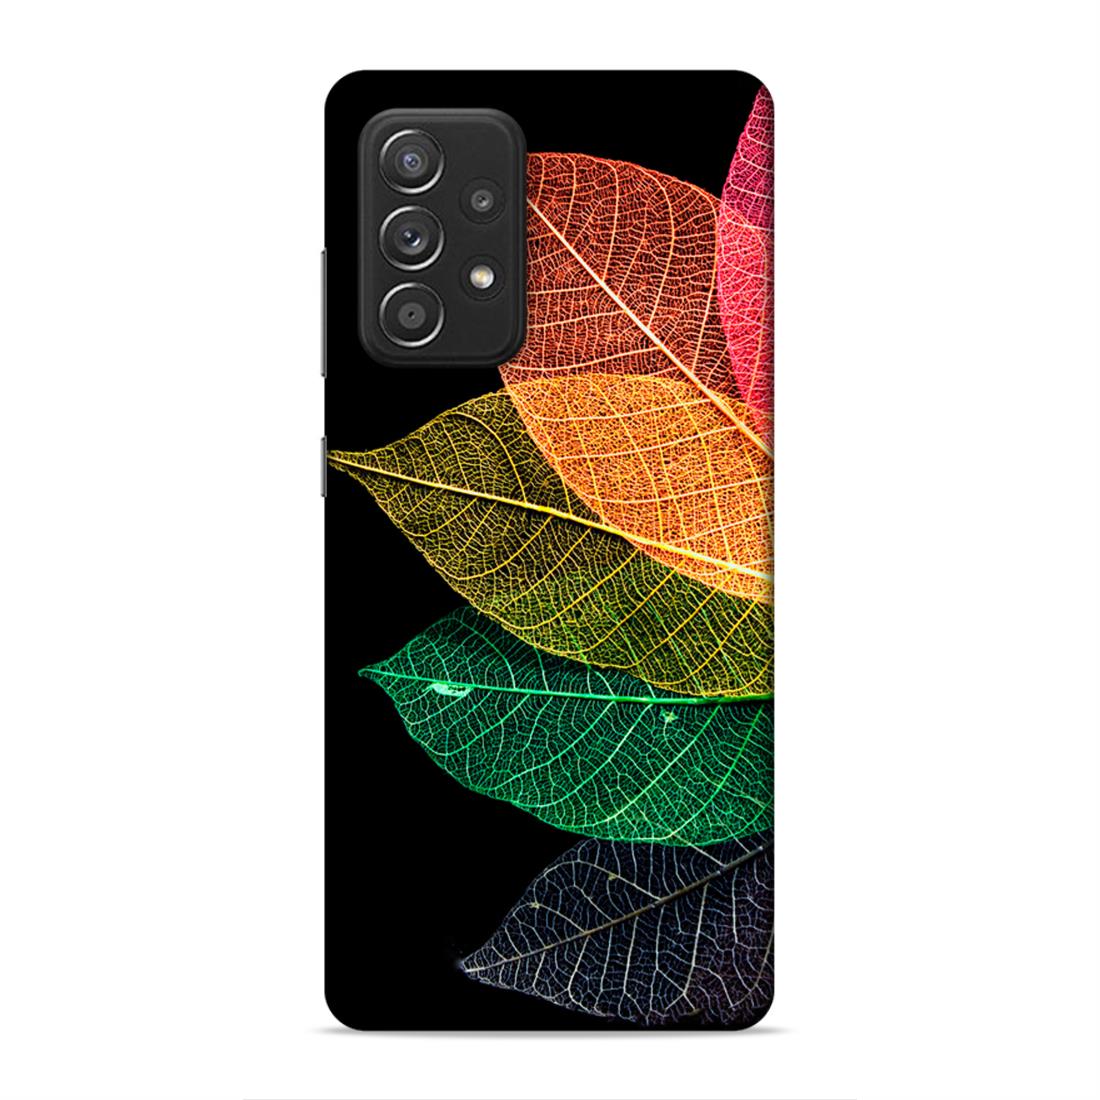 Leaf Hard Back Case For Samsung Galaxy A52 / A52s 5G